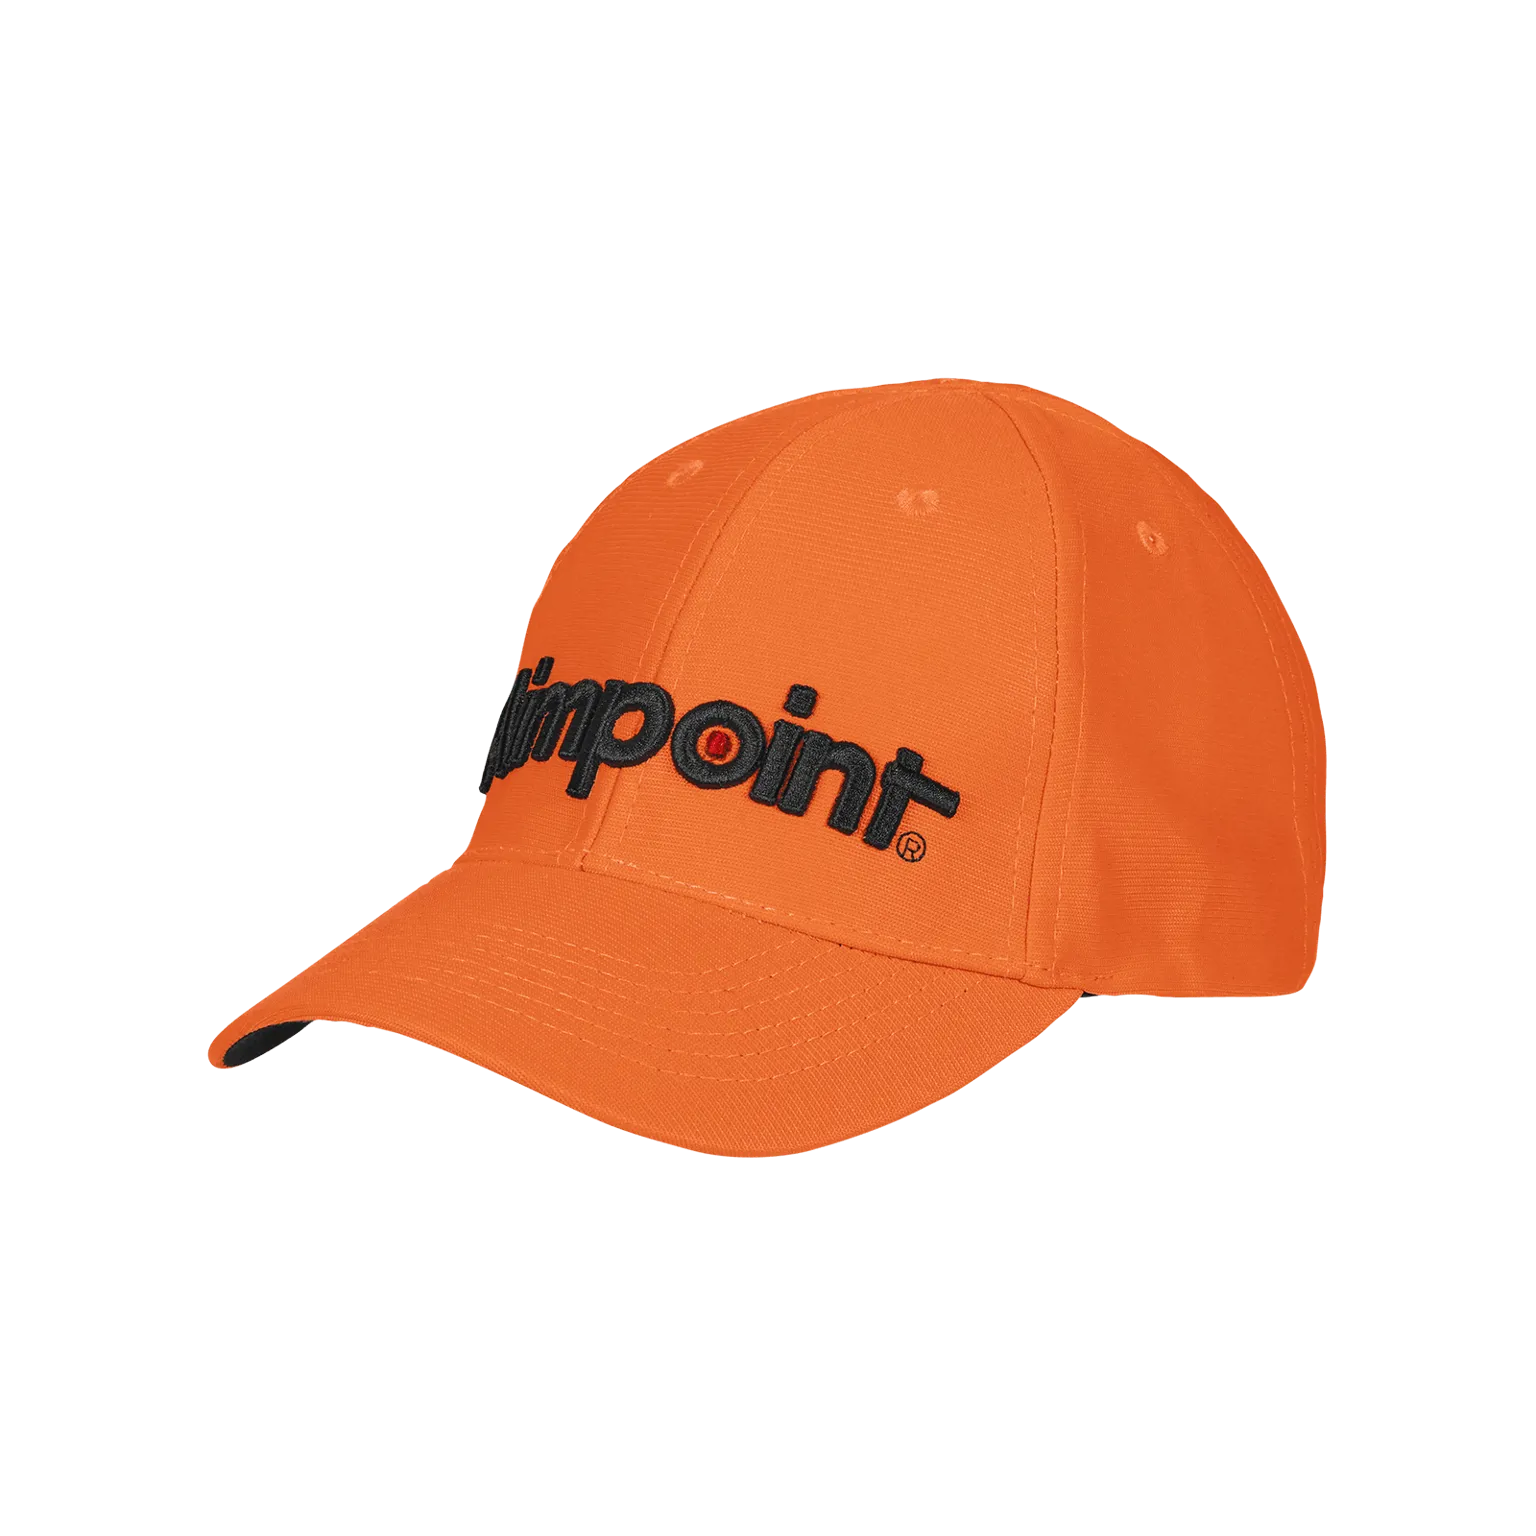 Aimpoint® Cap - Orange Hunting cap  - 1